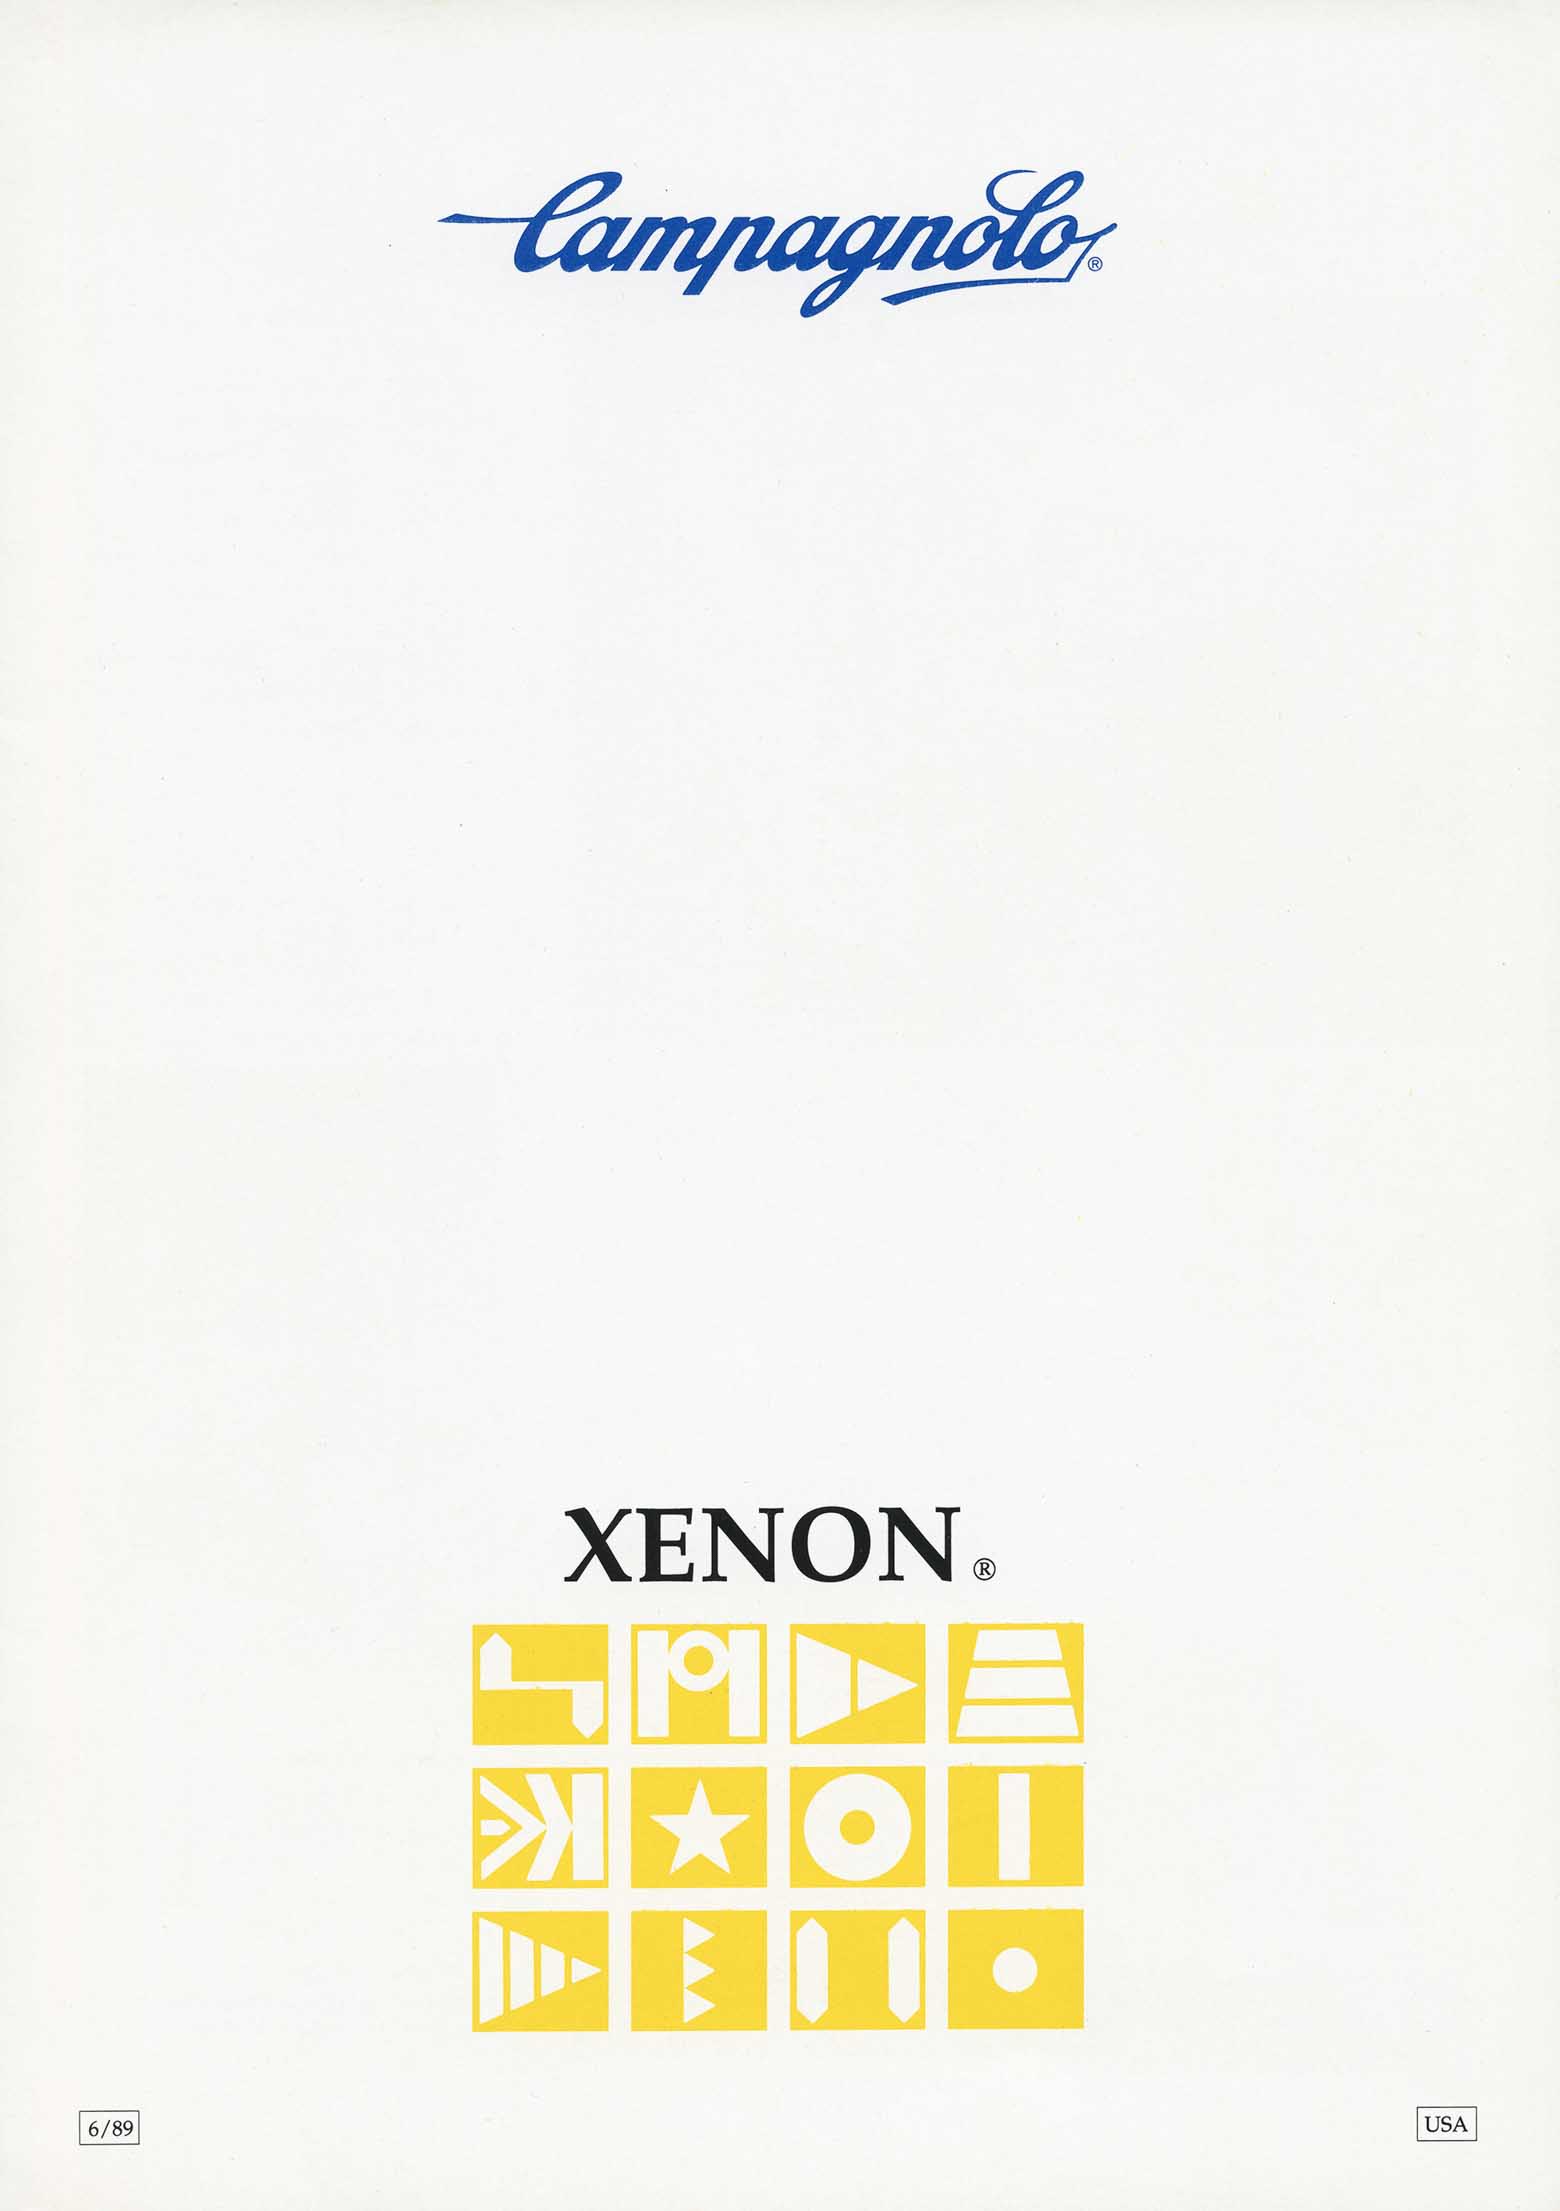 Campagnolo - Xenon scan 01 main image